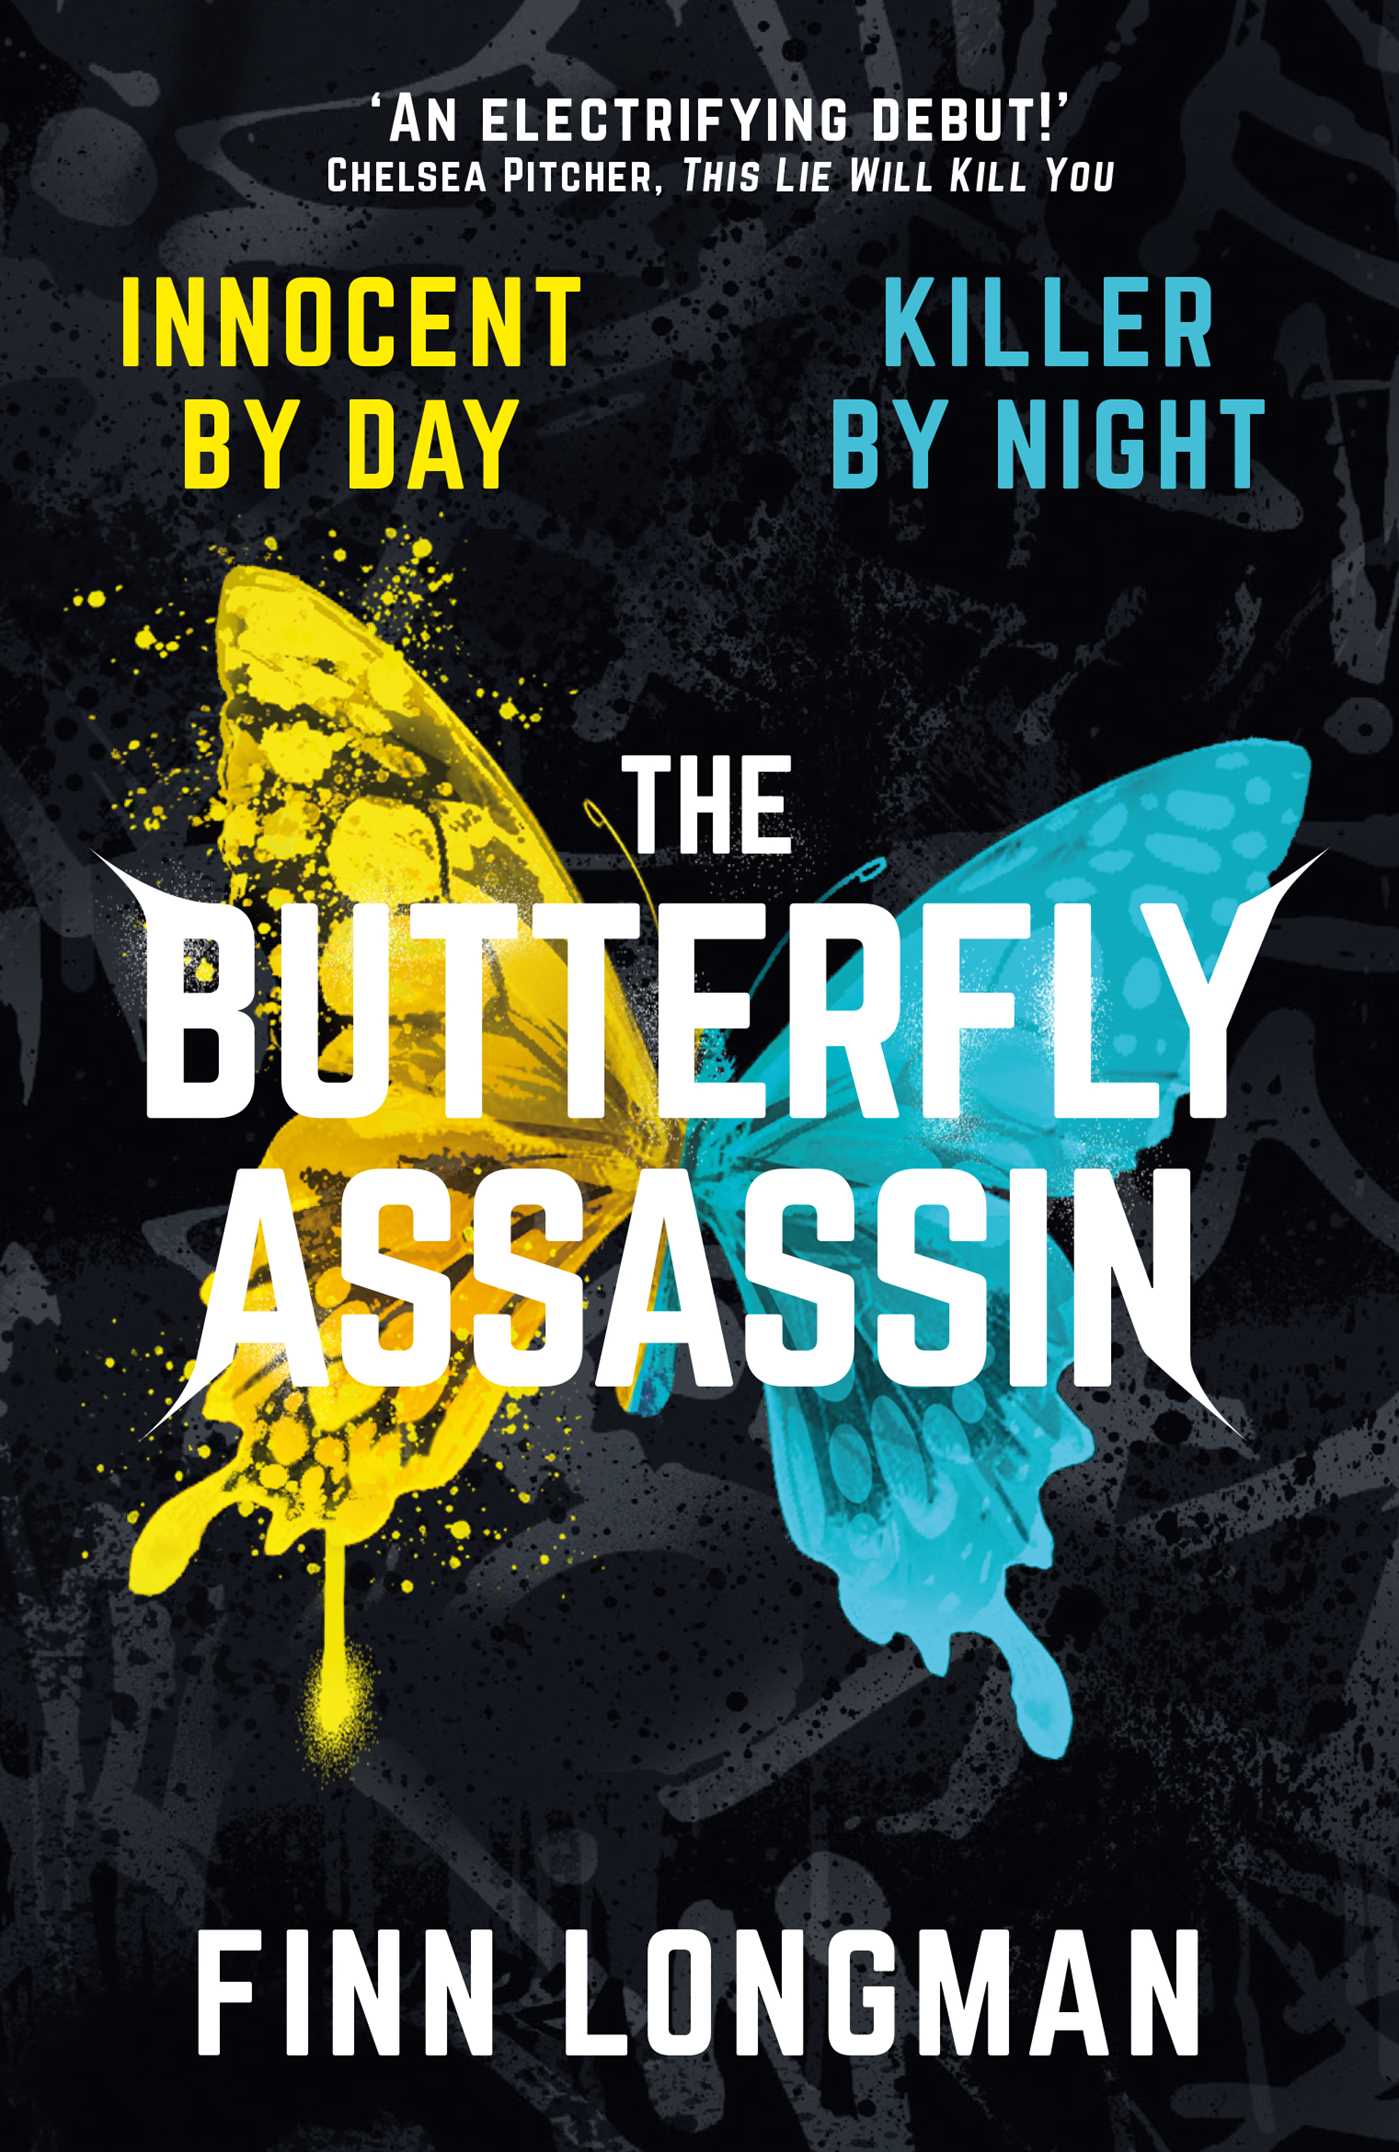 Goodreads (https://www.goodreads.com/book/show/58949006-the-butterfly-assassin?ref=nav_sb_ss_1_21)